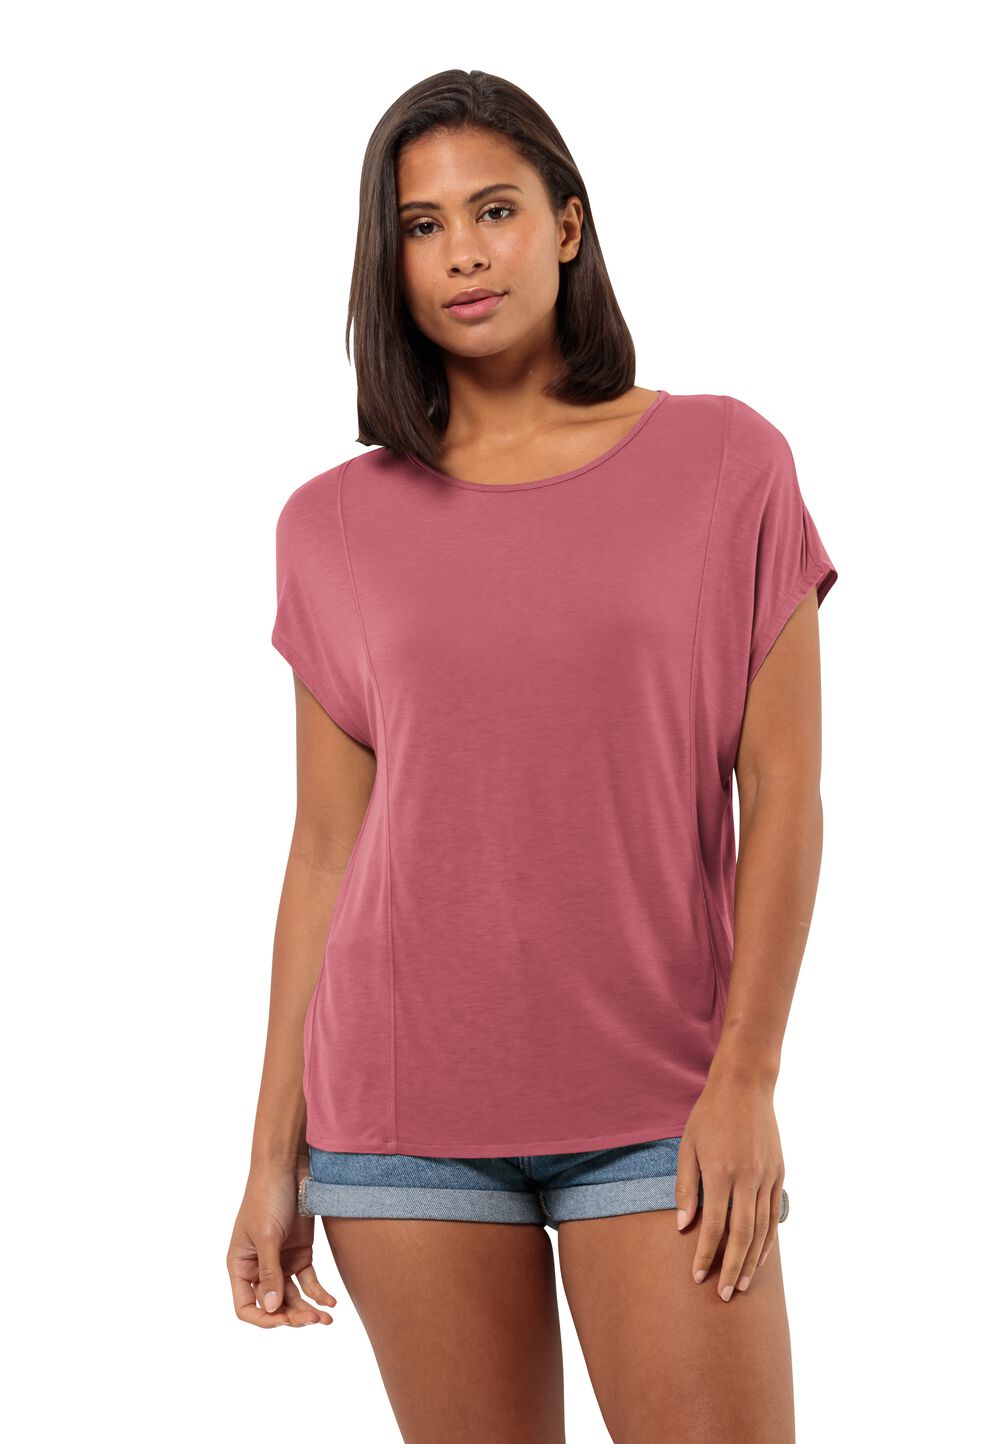 Jack Wolfskin Mola T-Shirt Women T-shirt Dames XS soft pink soft pink